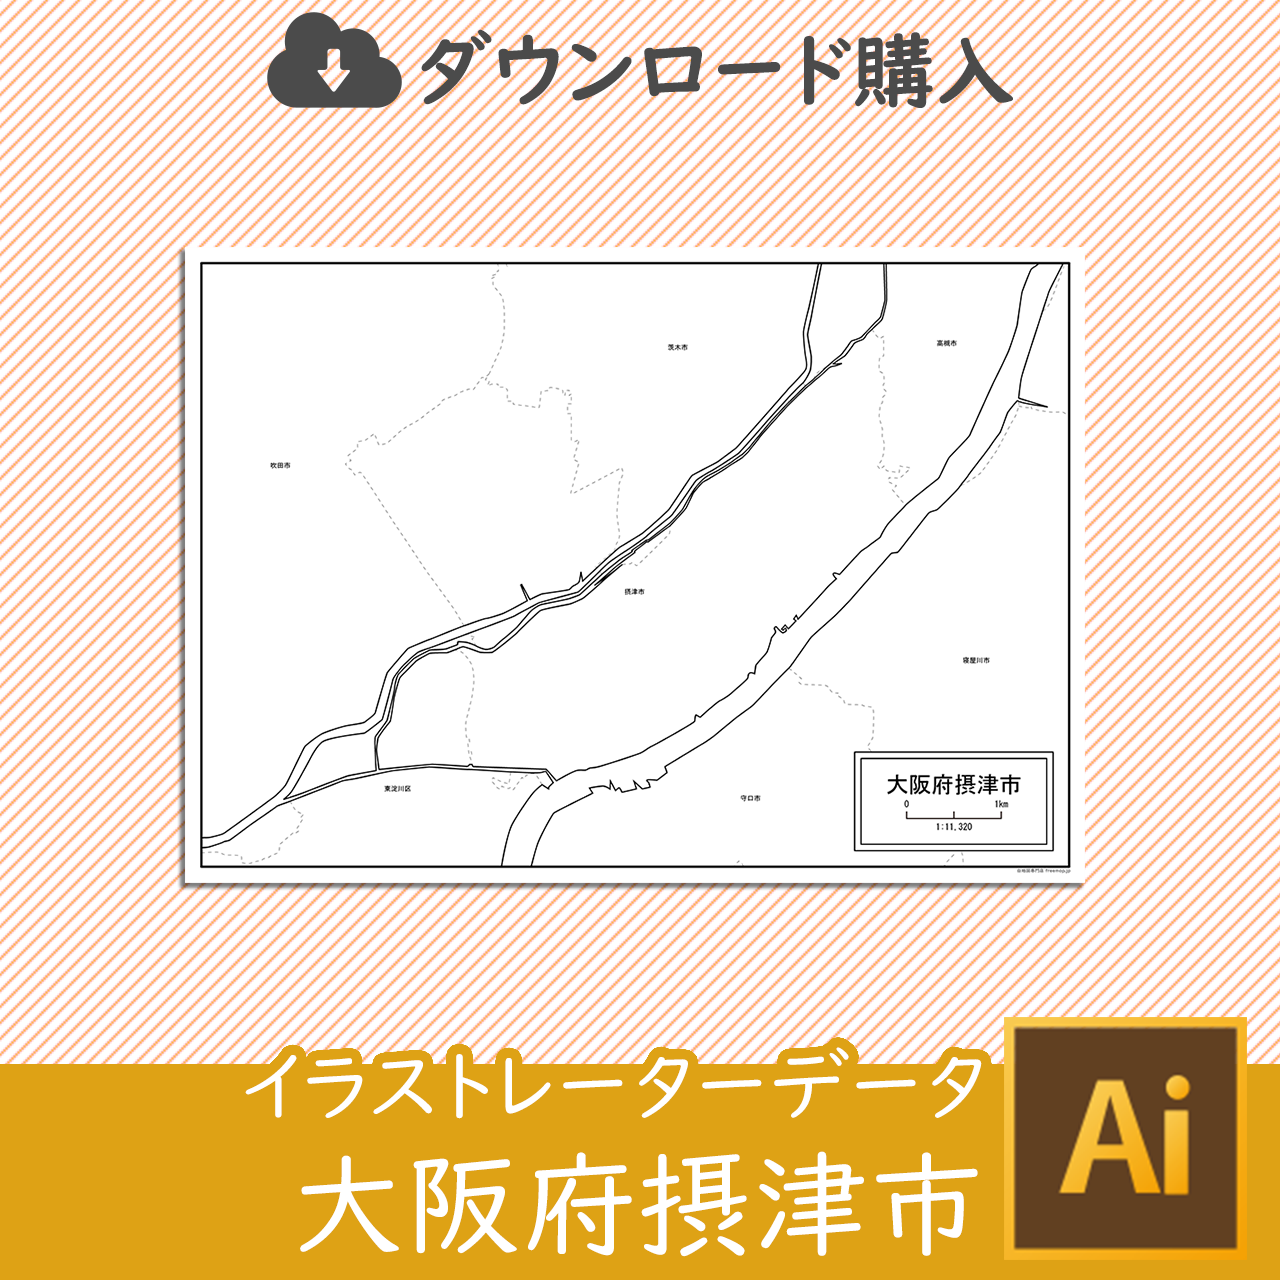 摂津市のaiデータのサムネイル画像